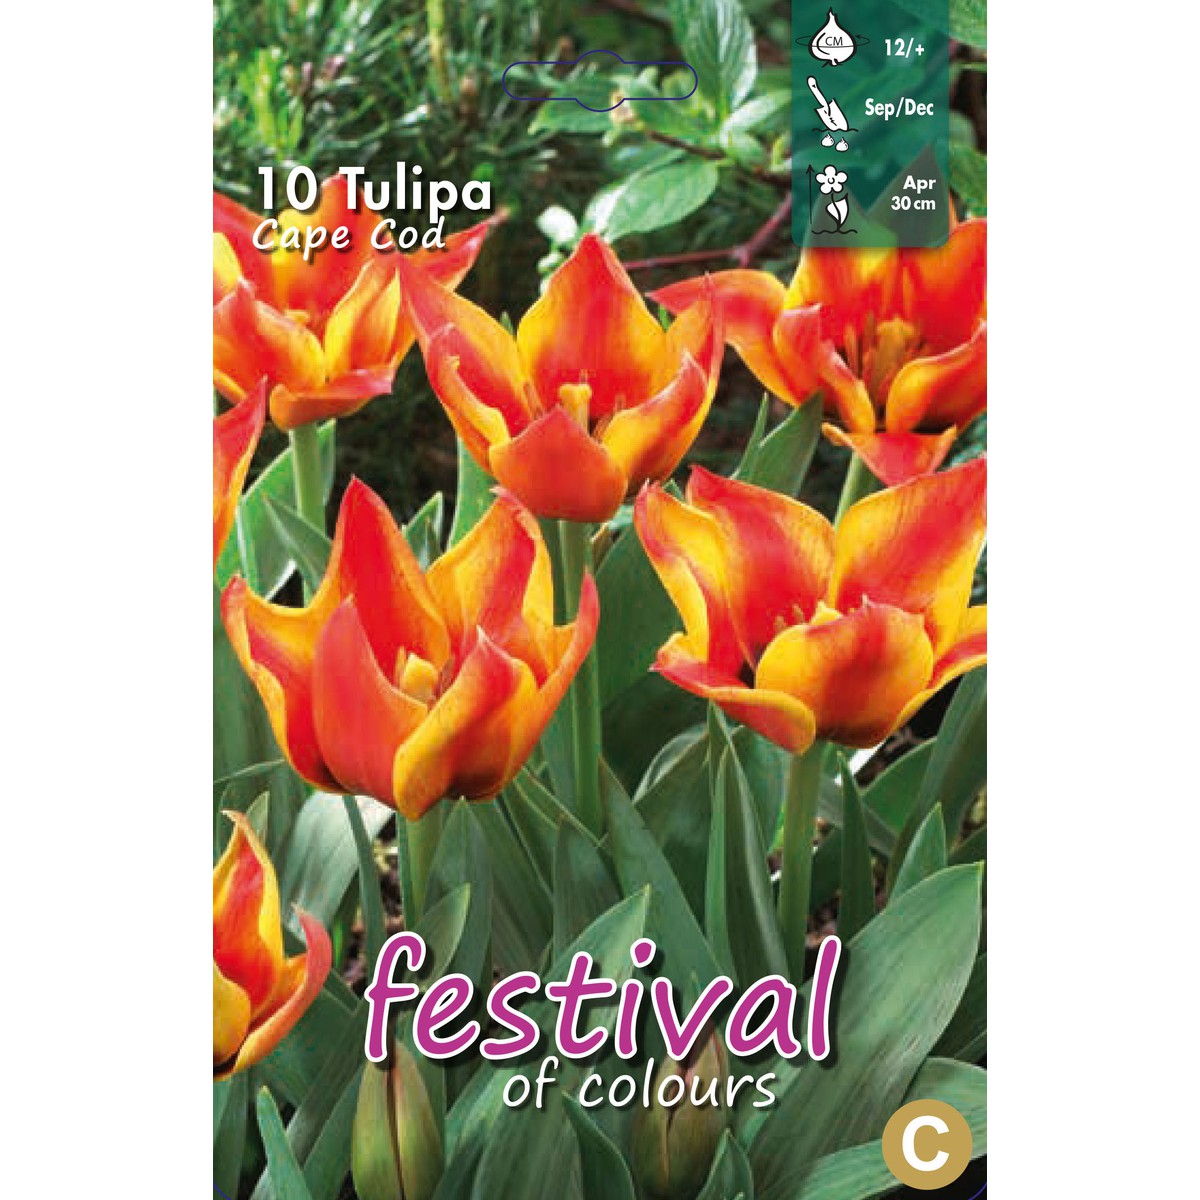   Tulipes greigii 'Cape cod'  10 pcs 12/+